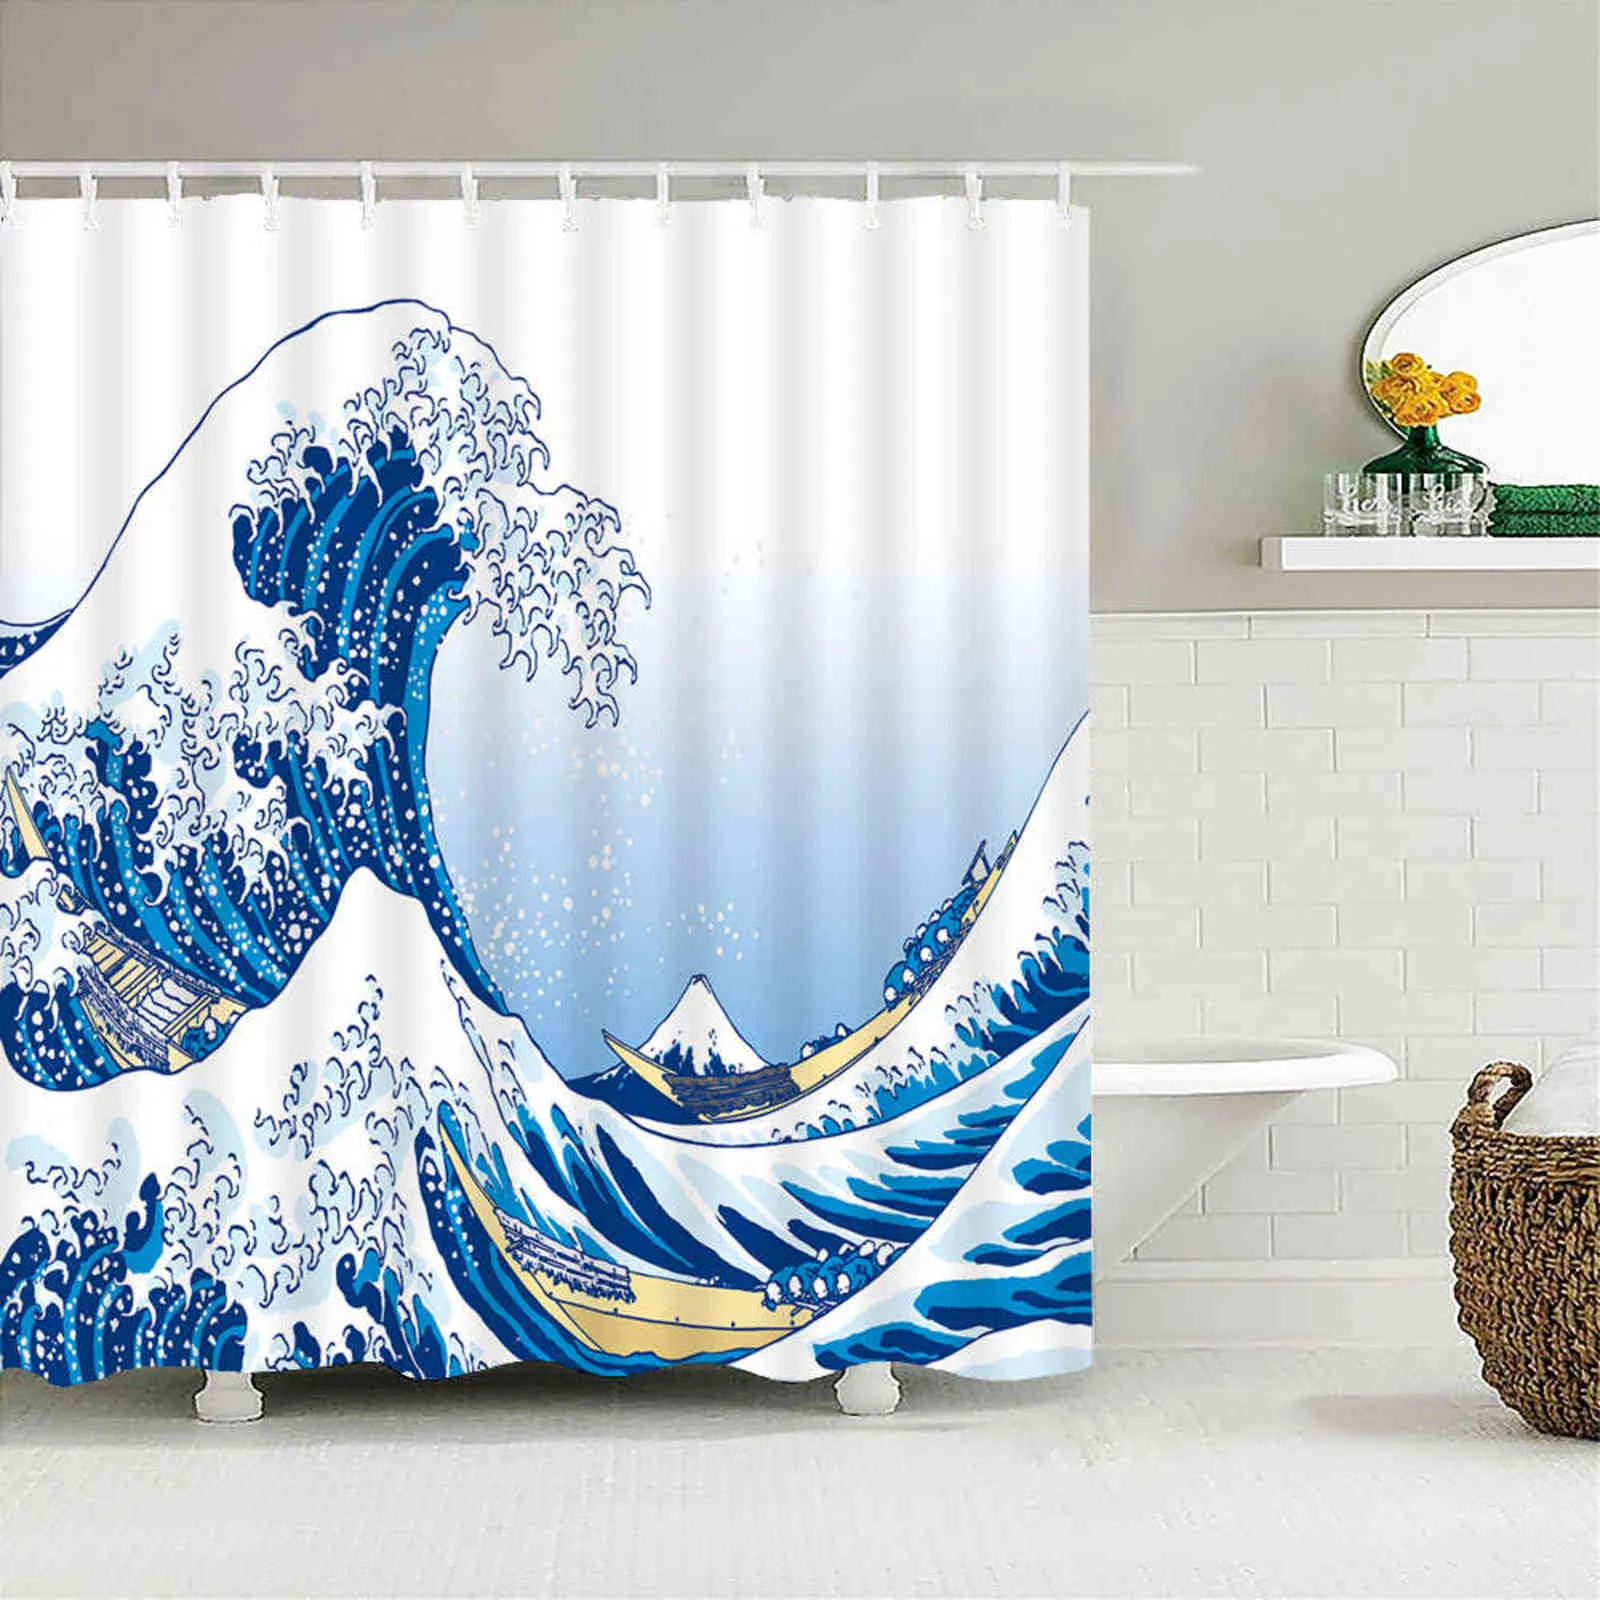 Duschvorhang im japanischen Stil 3D-Tintengemälde Badezimmer Vorhang wasserdicht mit Haken 180 * 240 cm Duschvorhang Polyestergewebe 211116